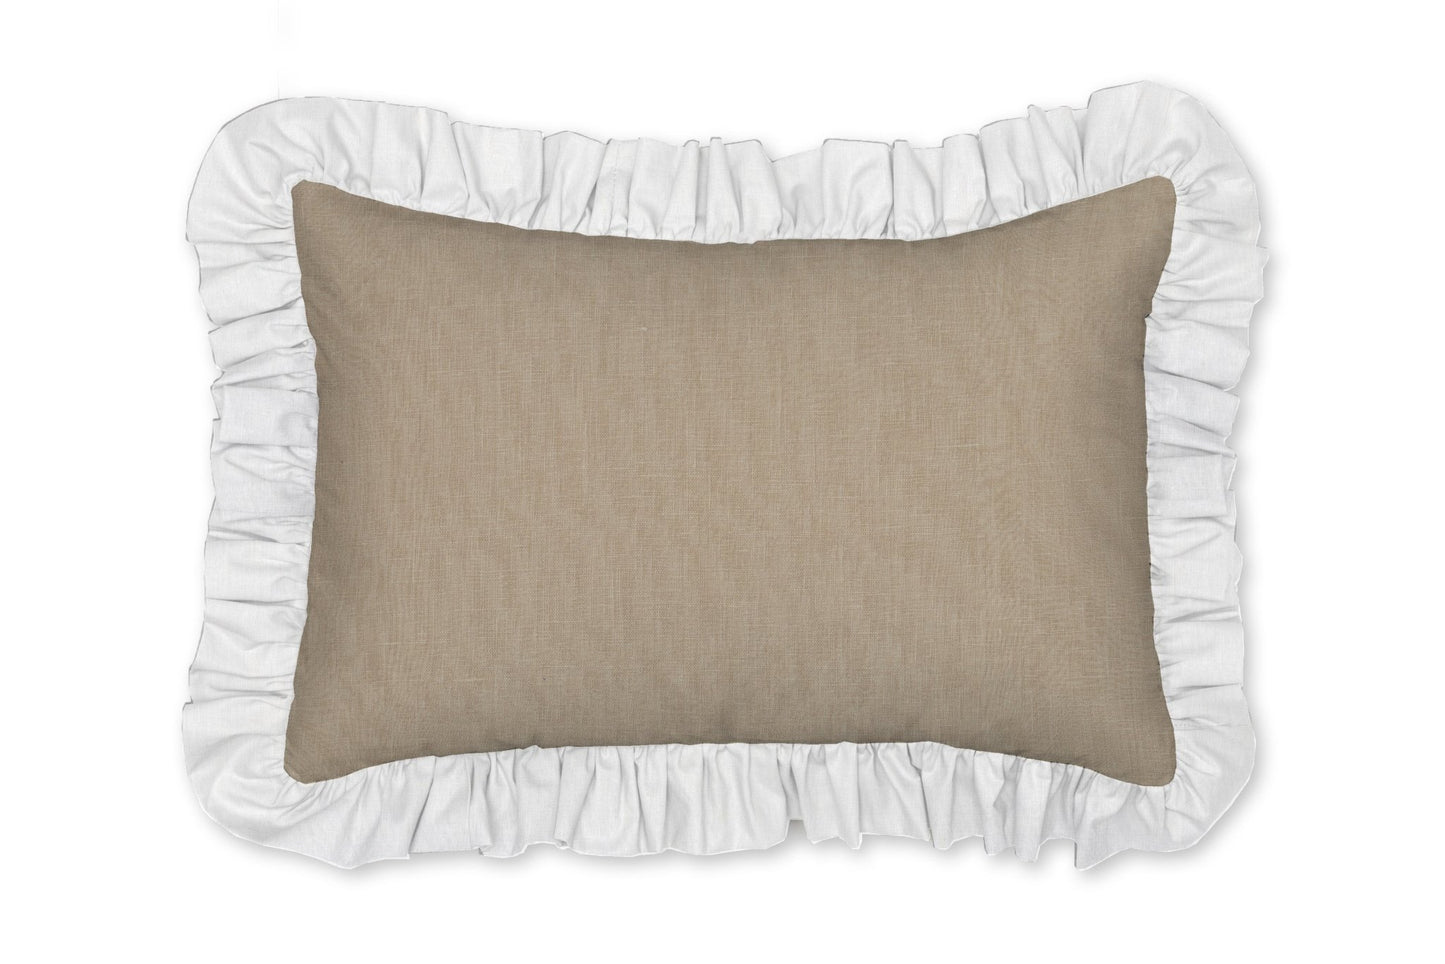 Natural Linen Decorative Pillow - New Arrivals Inc